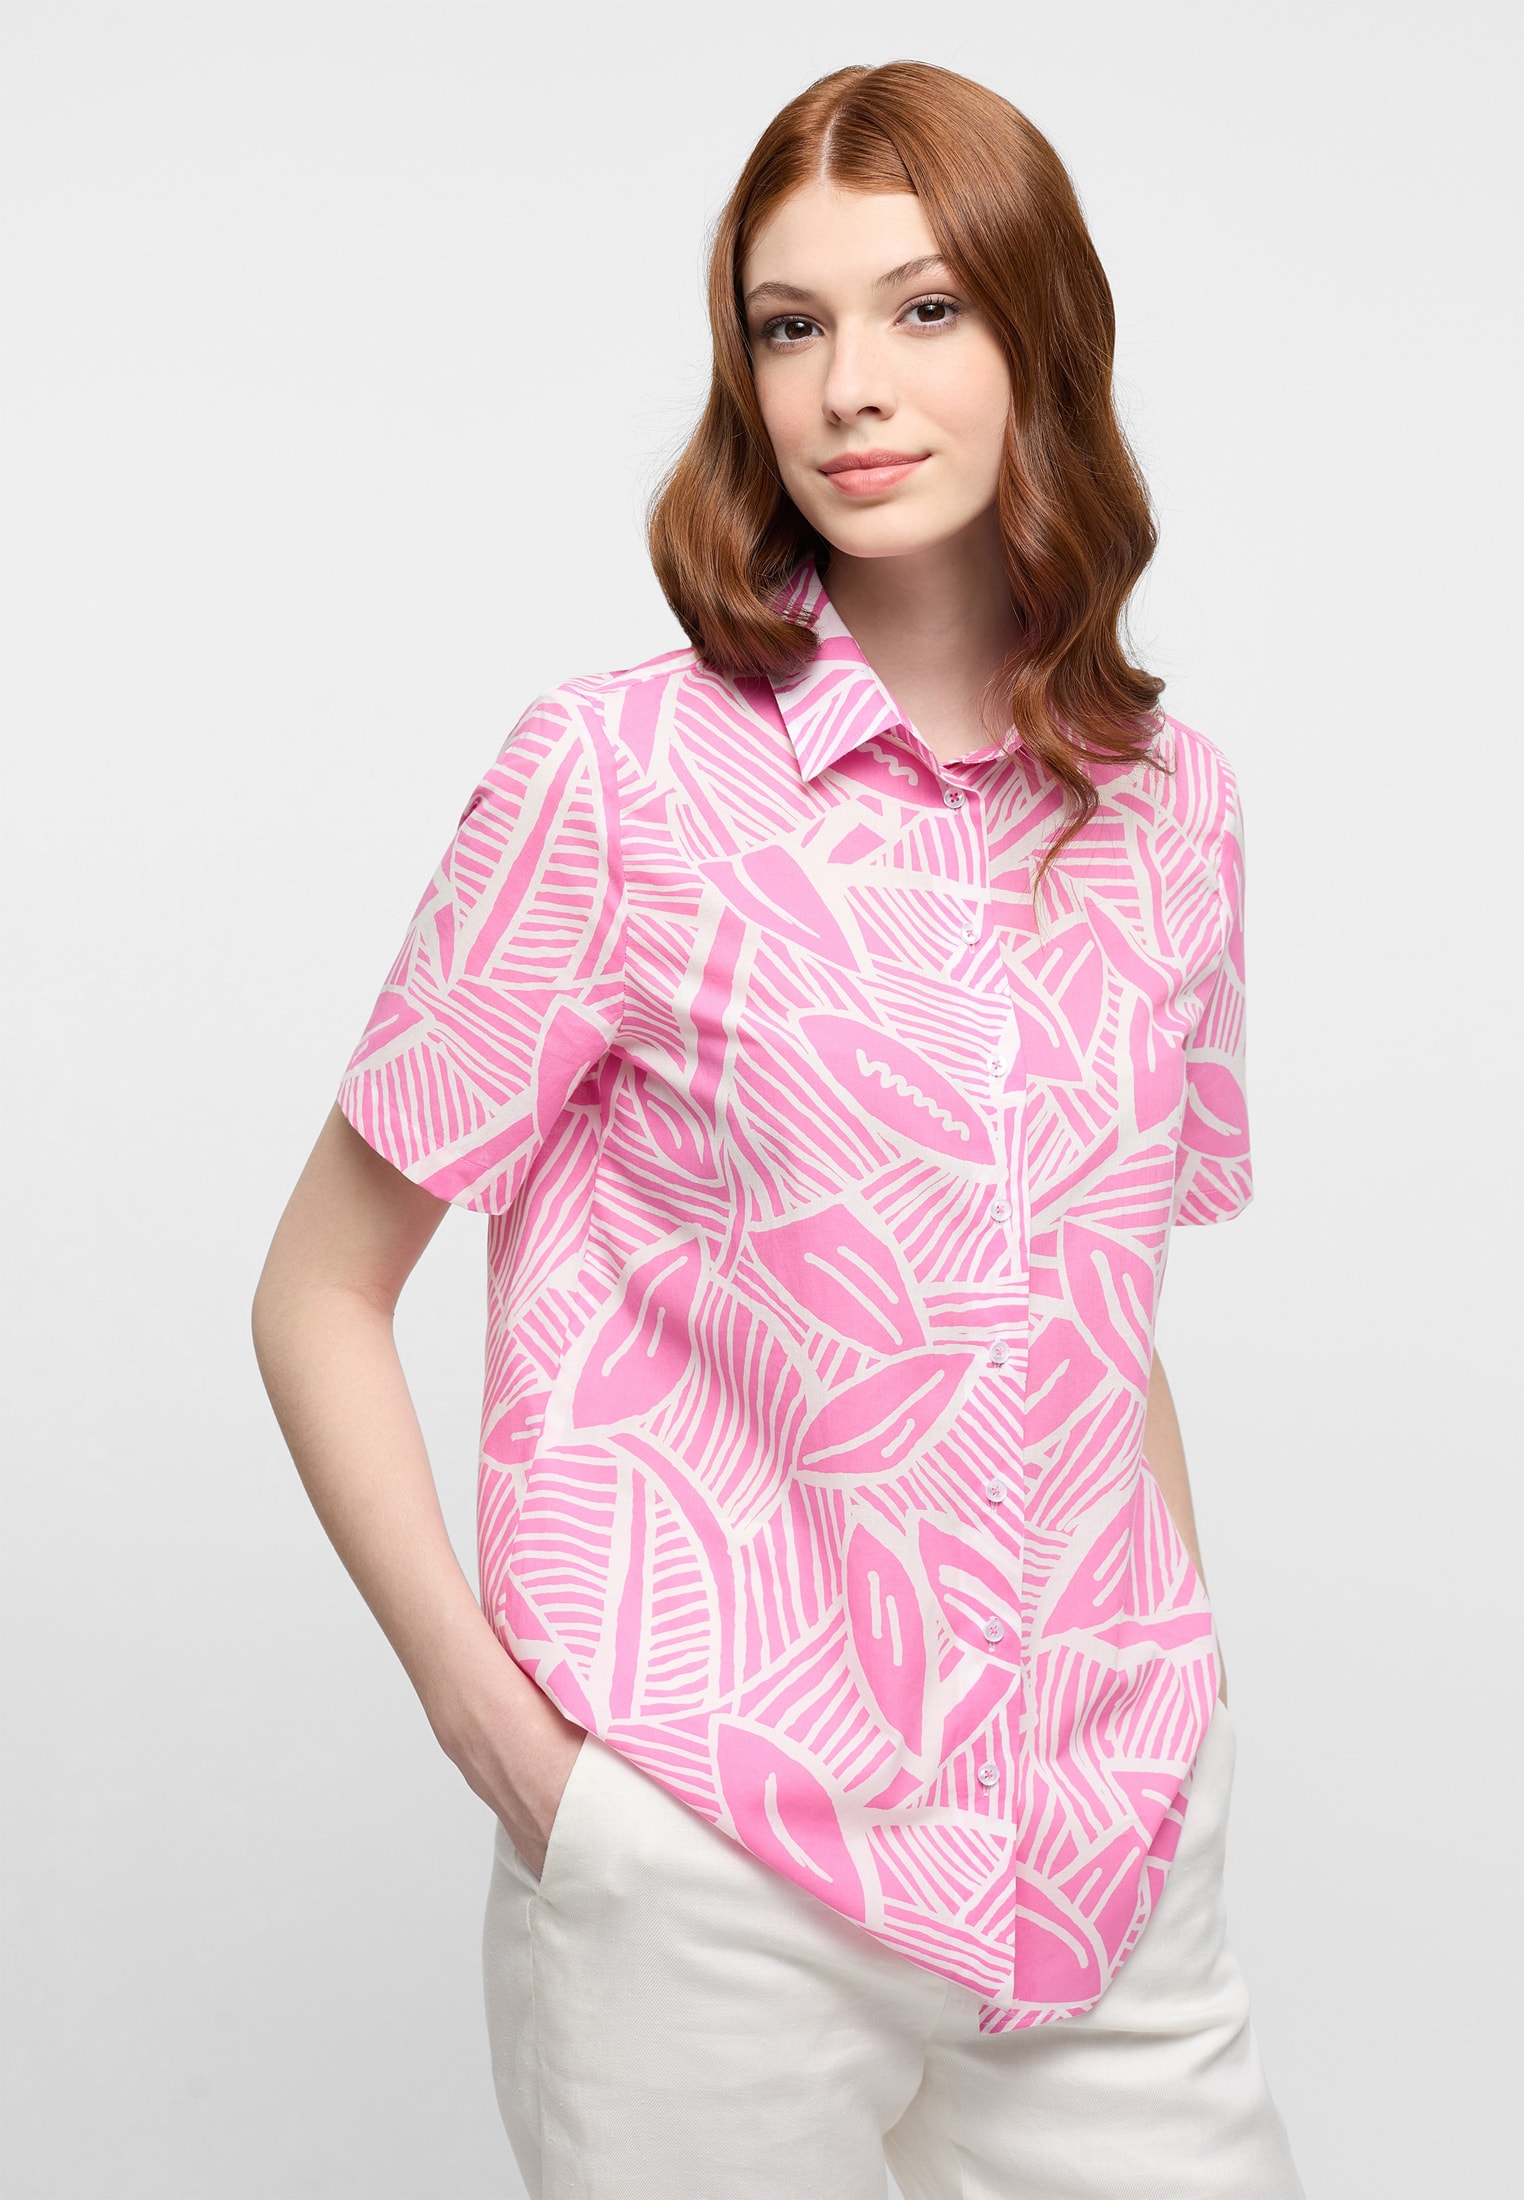 Blusen für Damen günstig kaufen | ETERNA Outlet